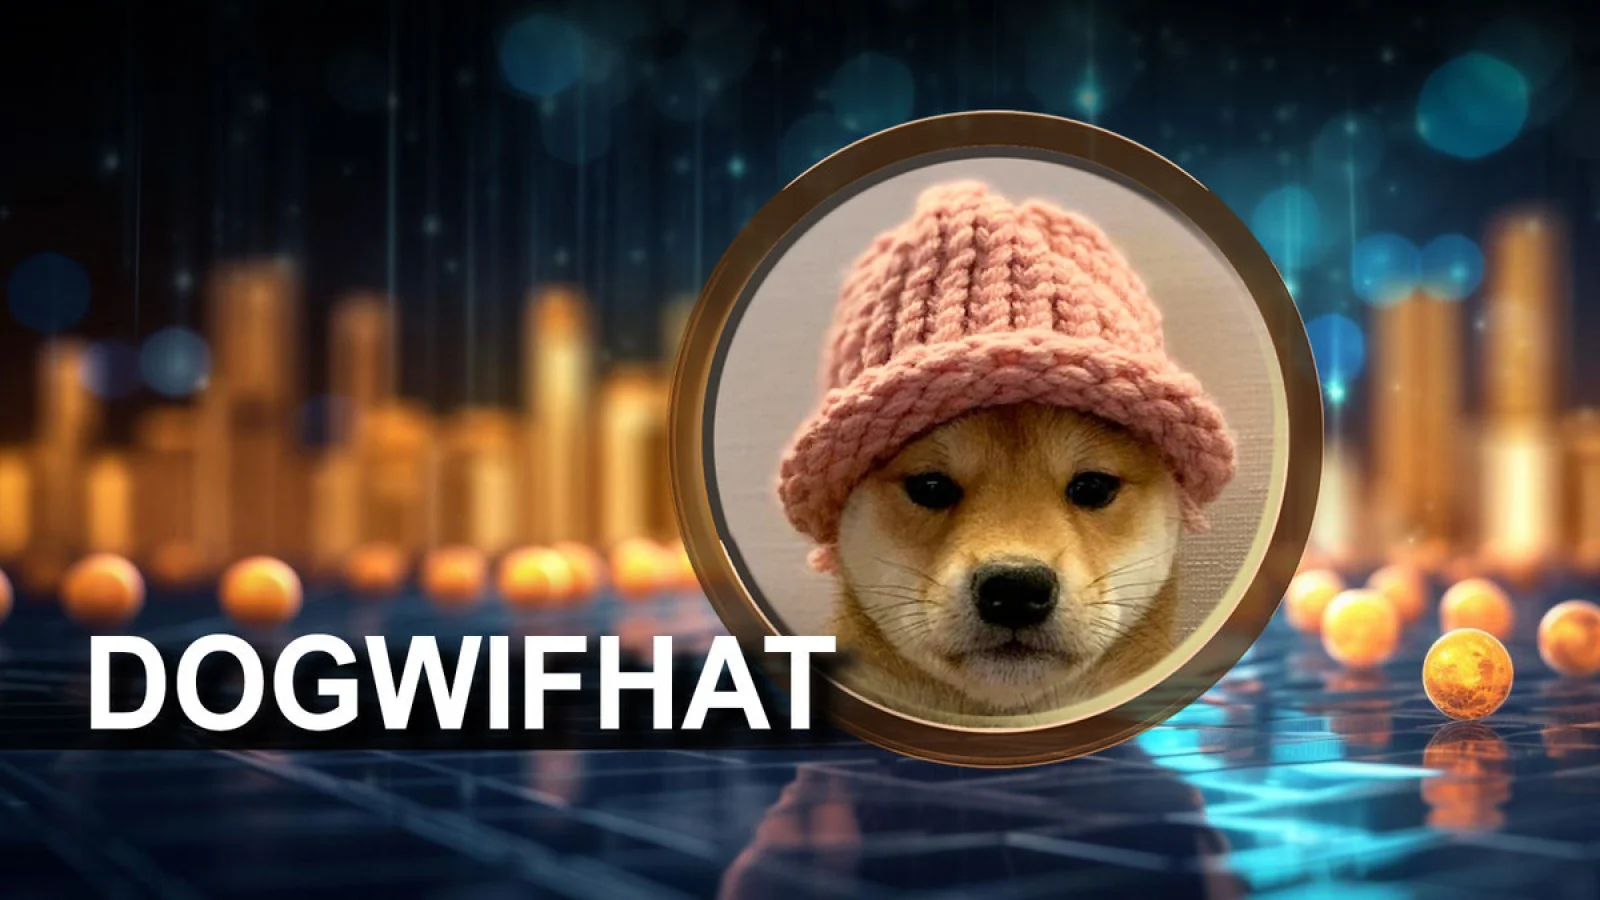 Dogwifhat Skyrockets 48% Overnight, Smashing BONK, DOGE To $2